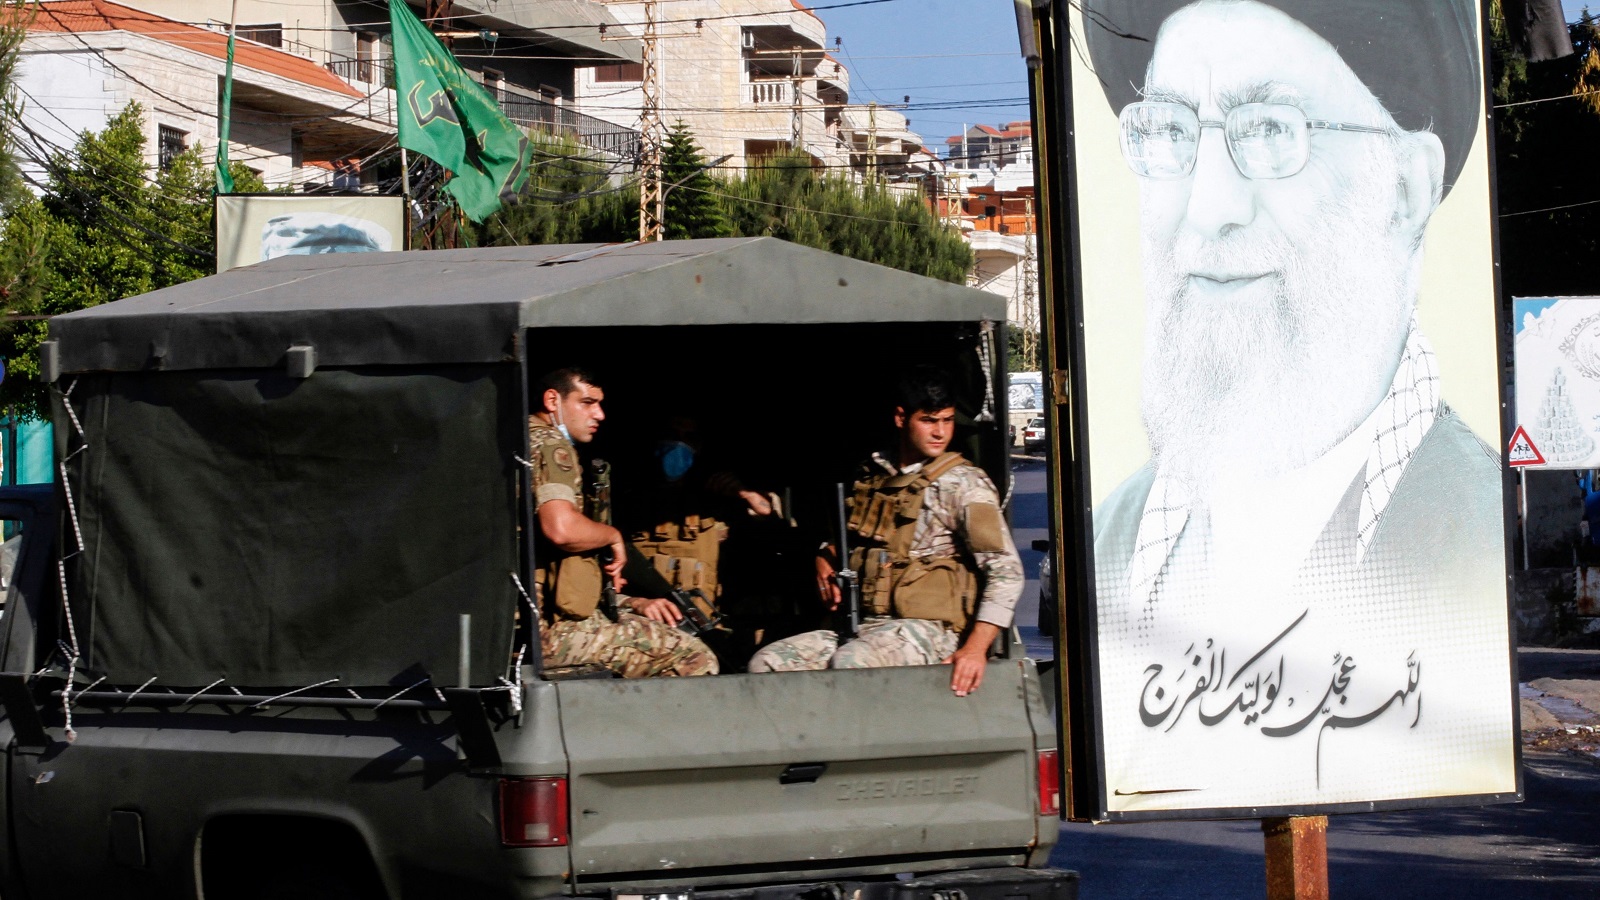 لبنان للانقسام الاقتصادي والسياسي: بلاد حزب الله وجغرافيا الجيش